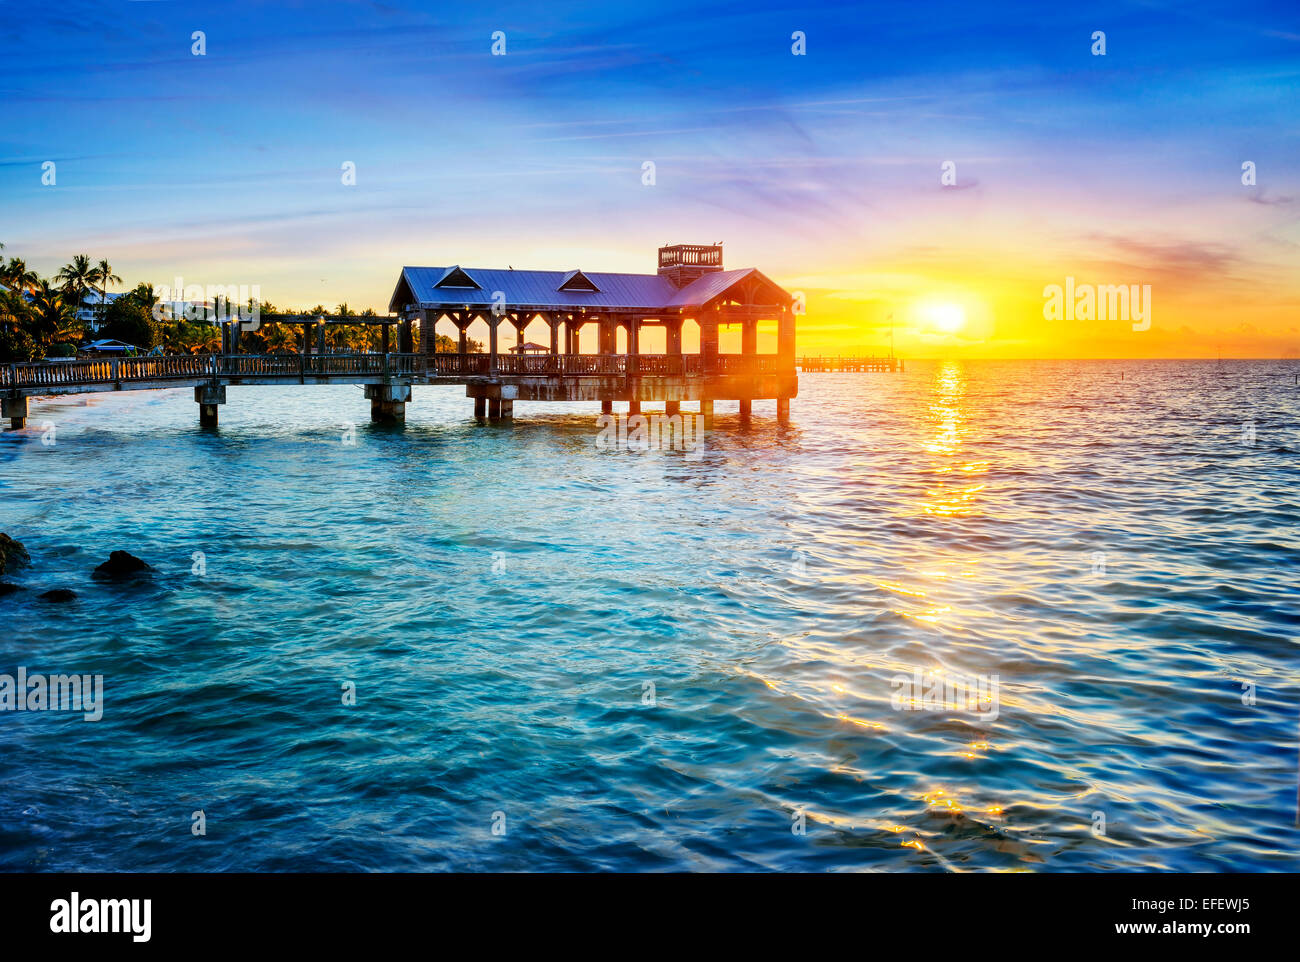 Pier am Strand in Key West, Florida USA Stockfoto